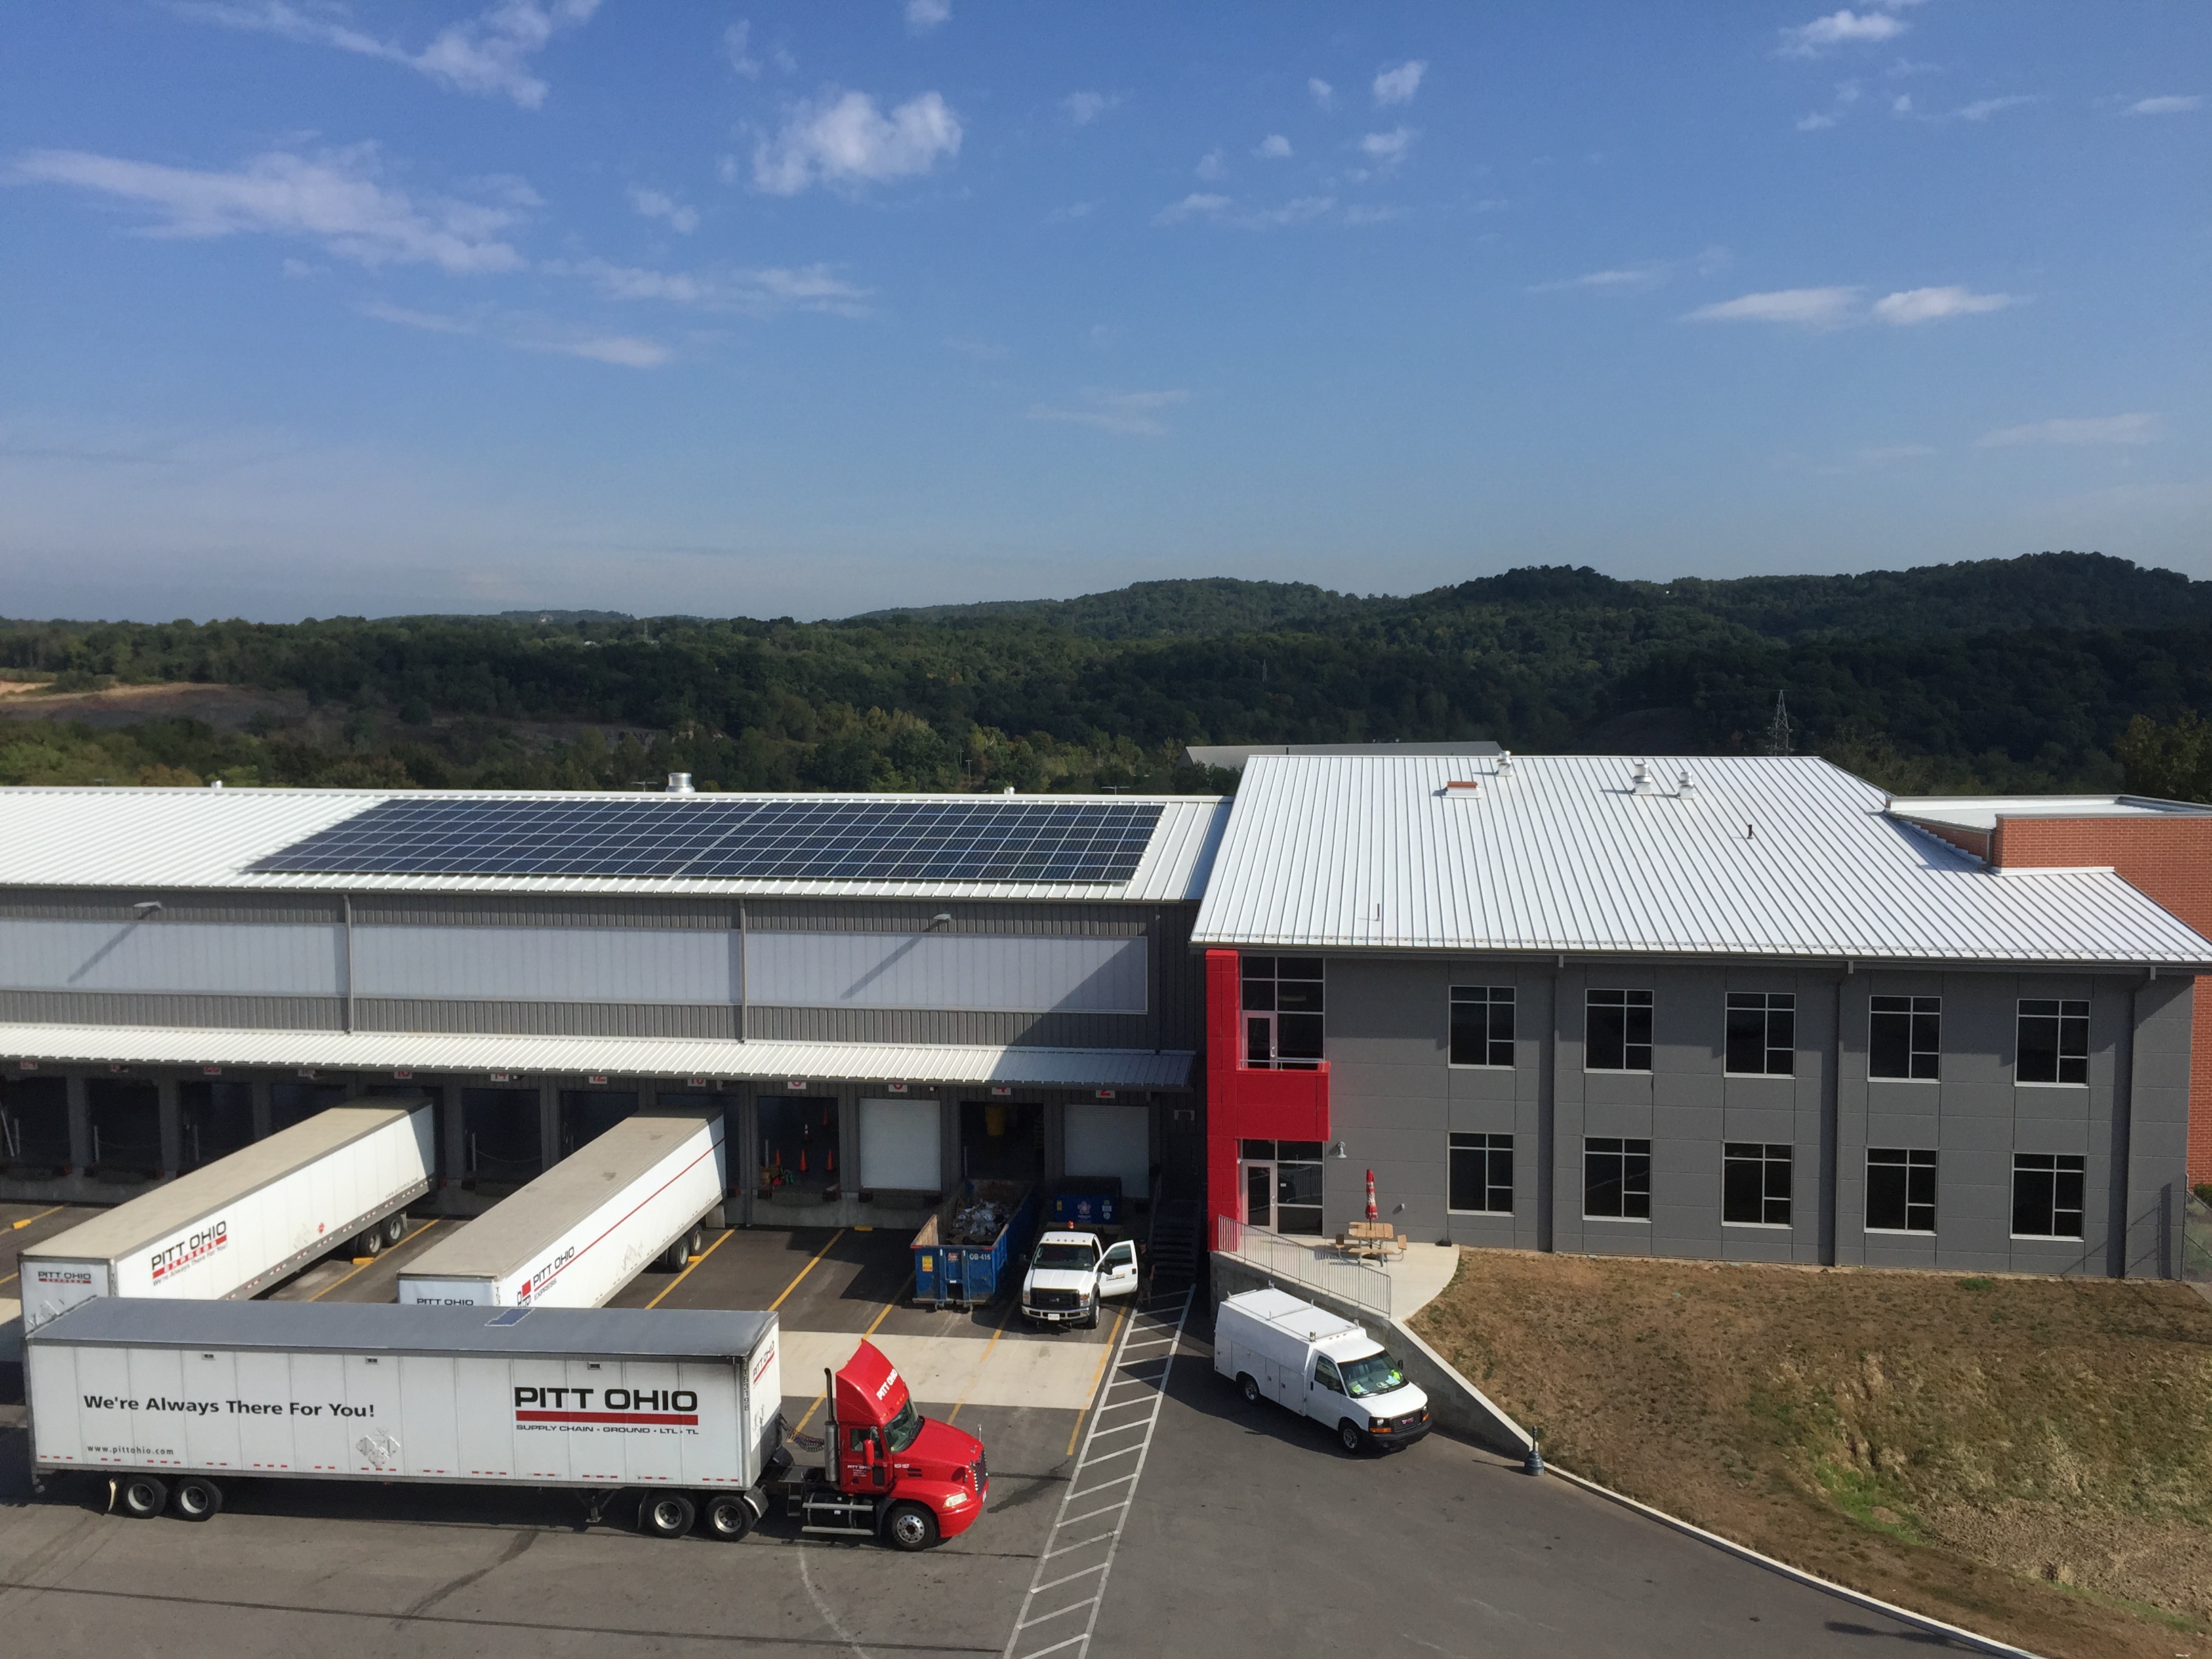 Solar panels on the Harmar facility